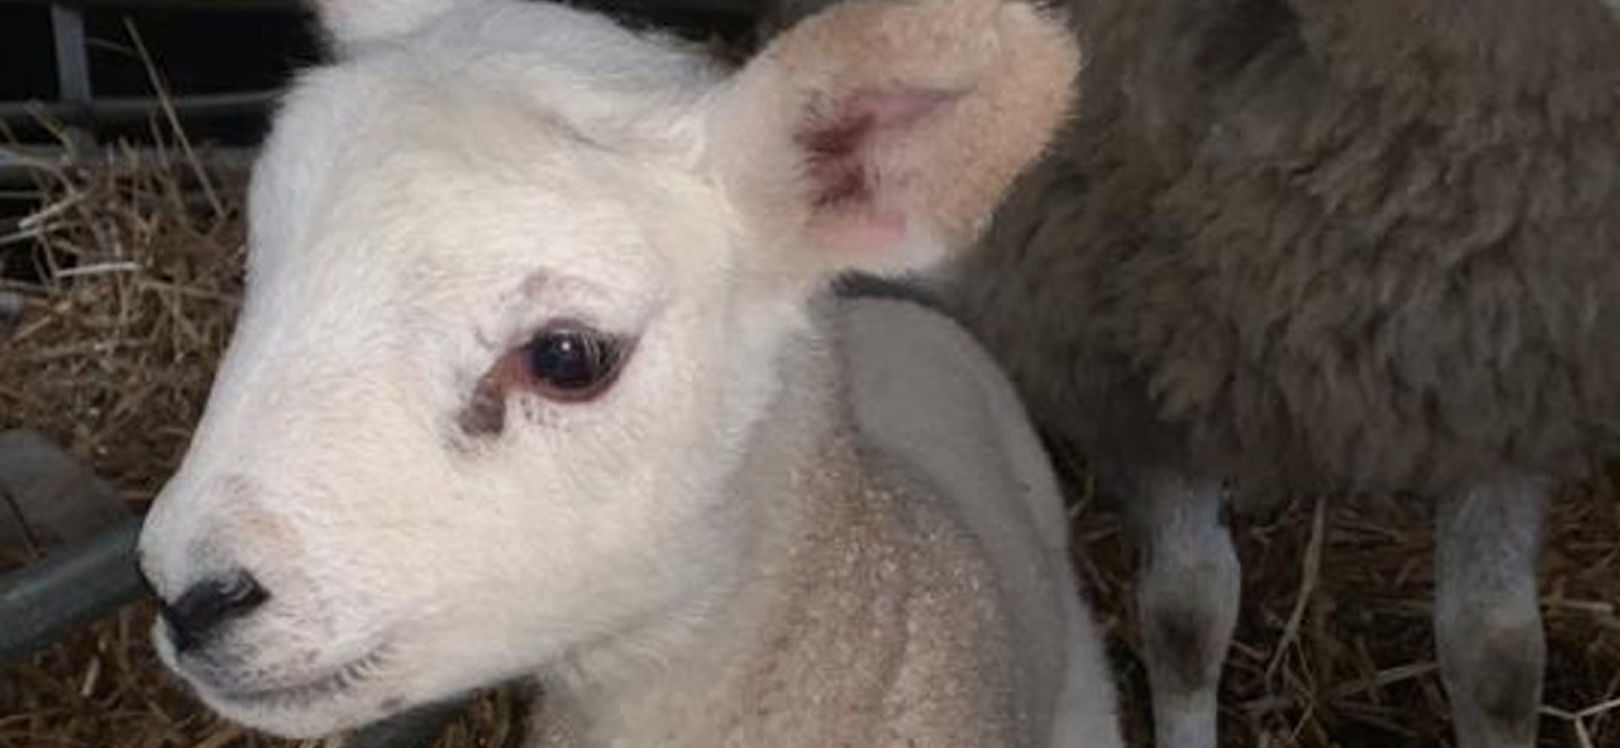 Lambs face